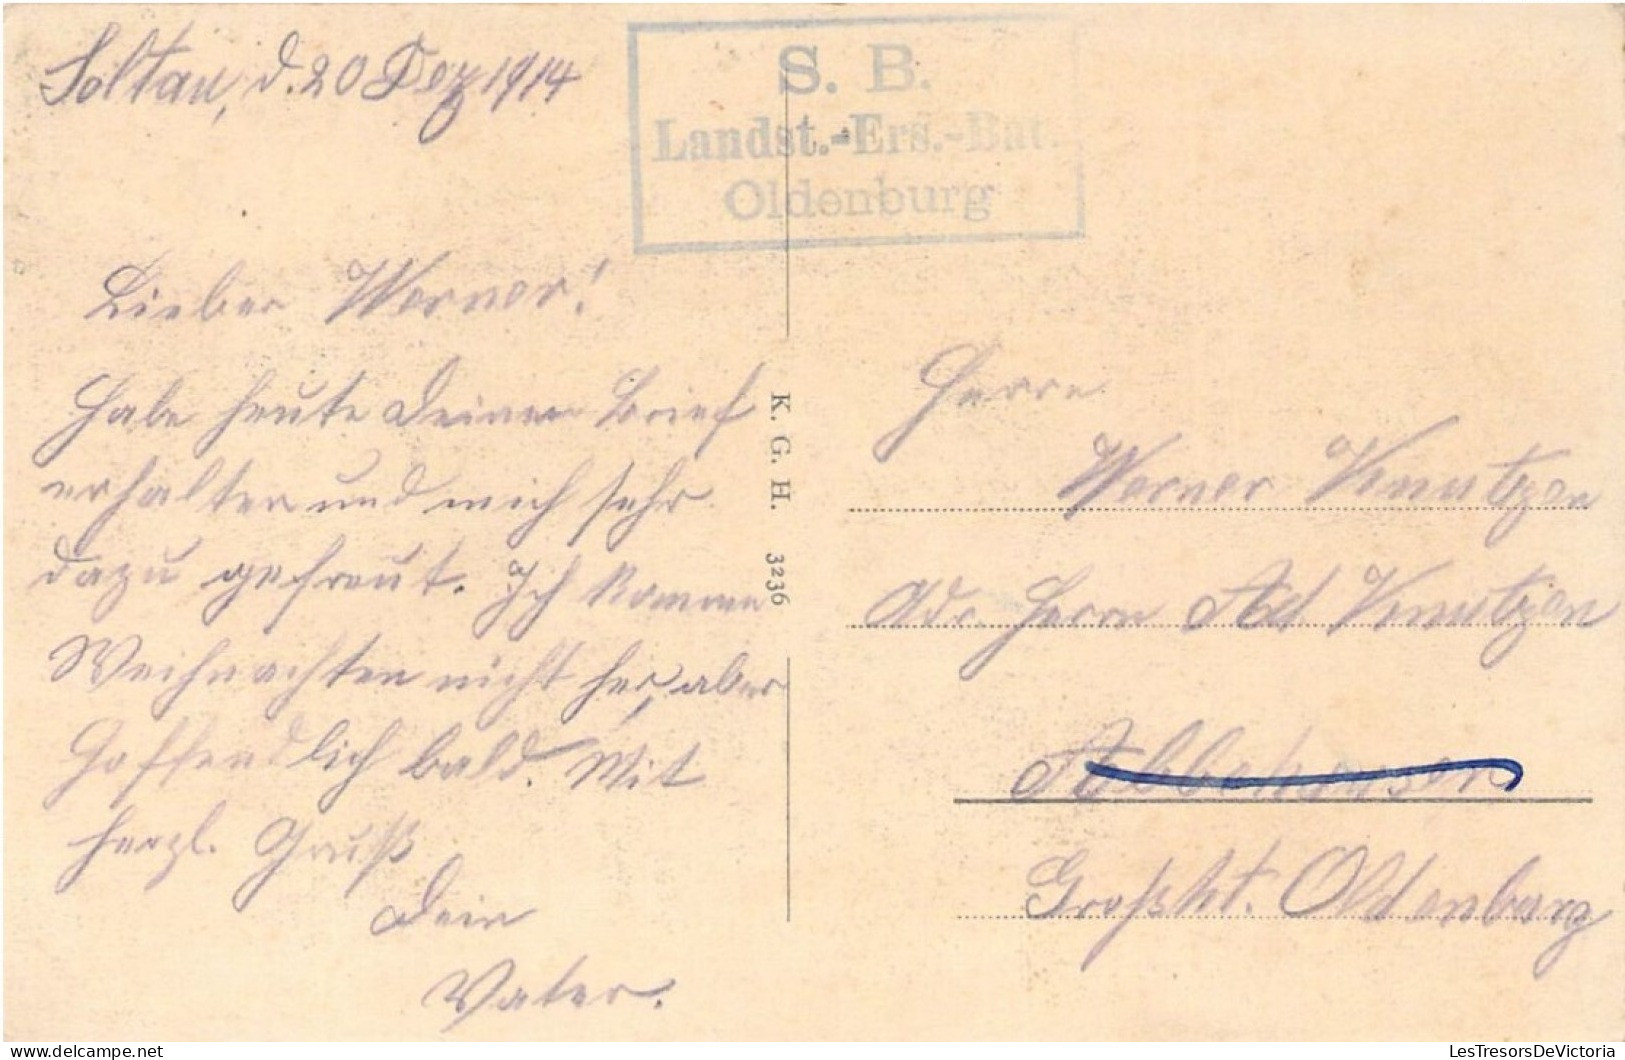 MILITARIA - MANOEUVRE - Transport Kriegsgefangener Belgier - Carte Postale Ancienne - Manöver